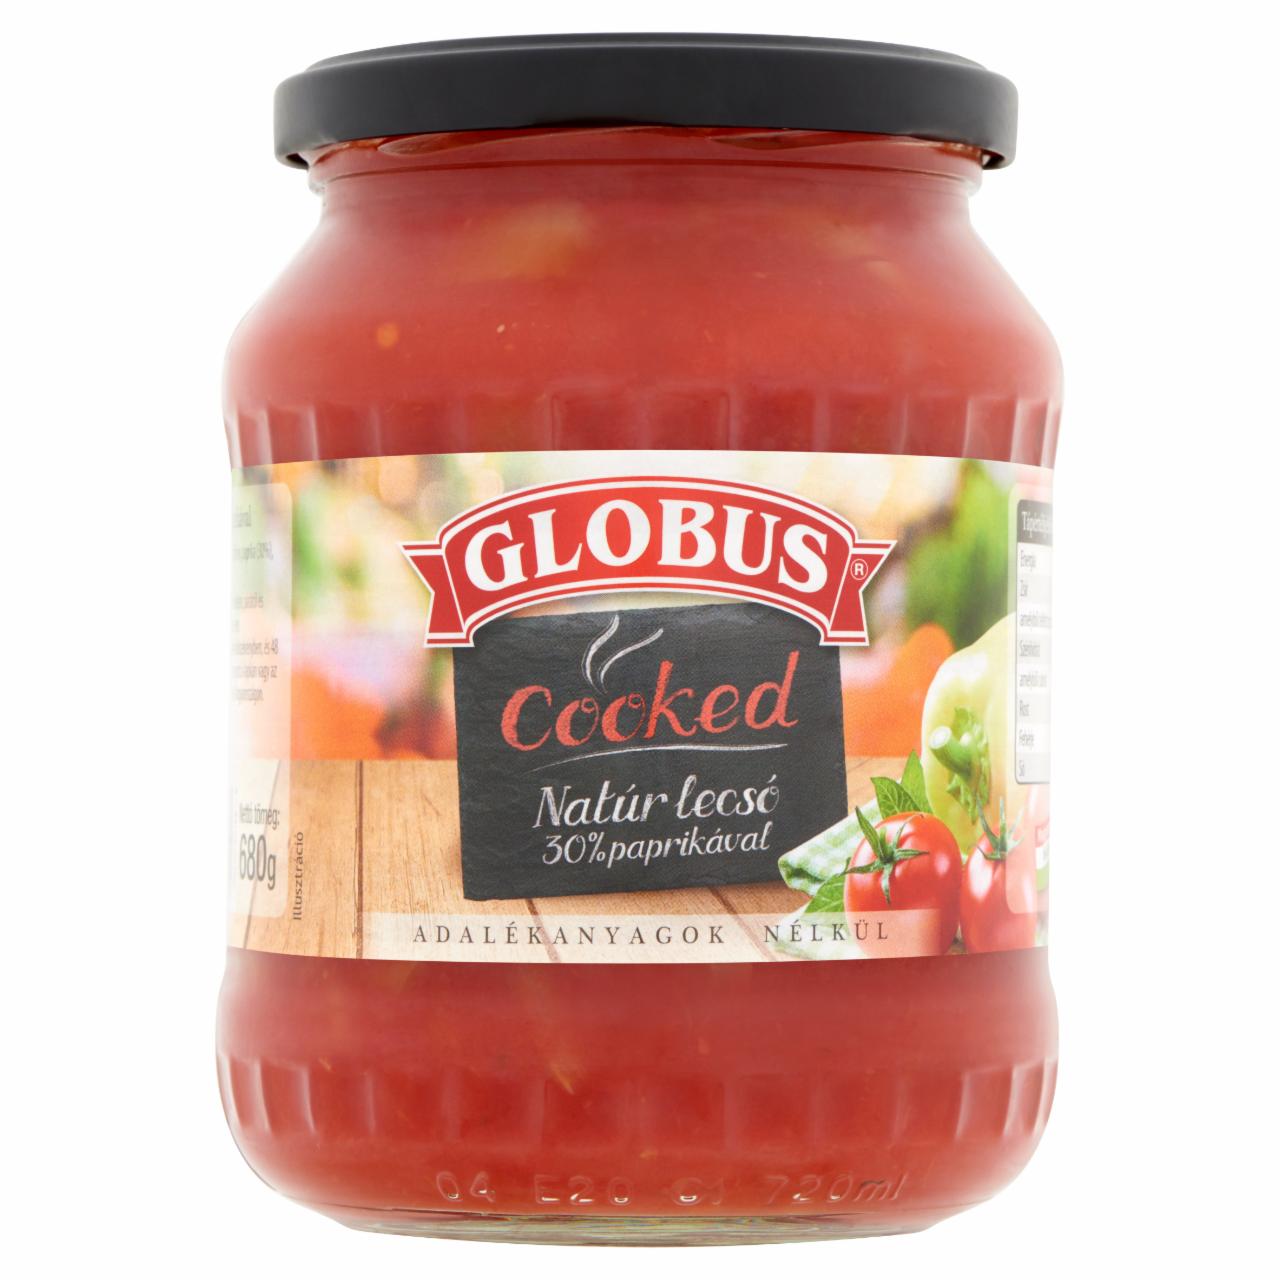 Képek - Globus Cooked natúr lecsó paprikával 680 g